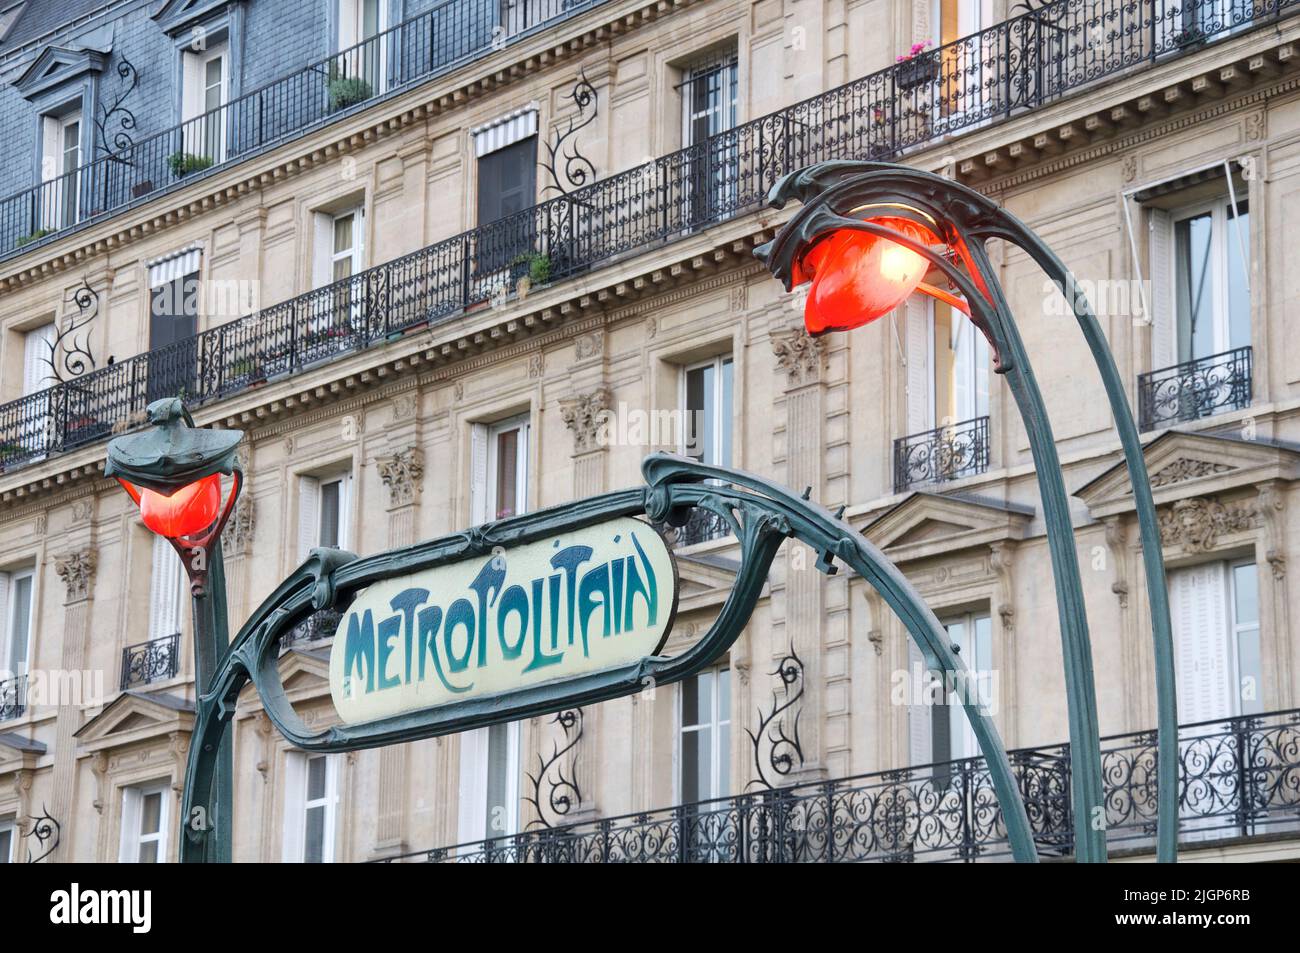 Emblématique panneau de métro Art Nouveau parisien conçu par Hector Guimard, à l'entrée de la station Europe. Avec des lampes sinueuses décoratives orange éclatant. Banque D'Images